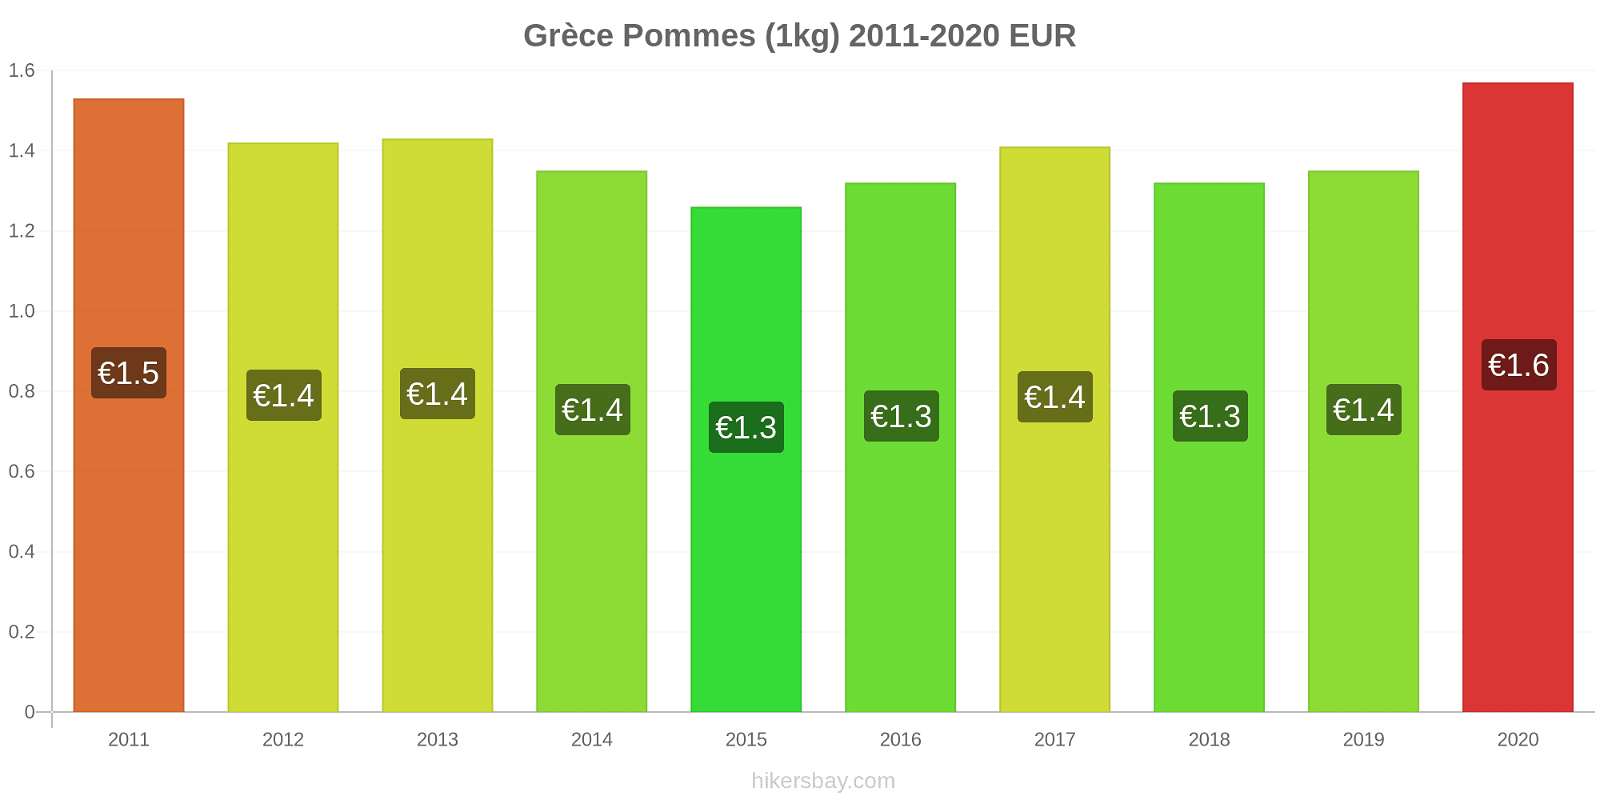 Grèce changements de prix Pommes (1kg) hikersbay.com